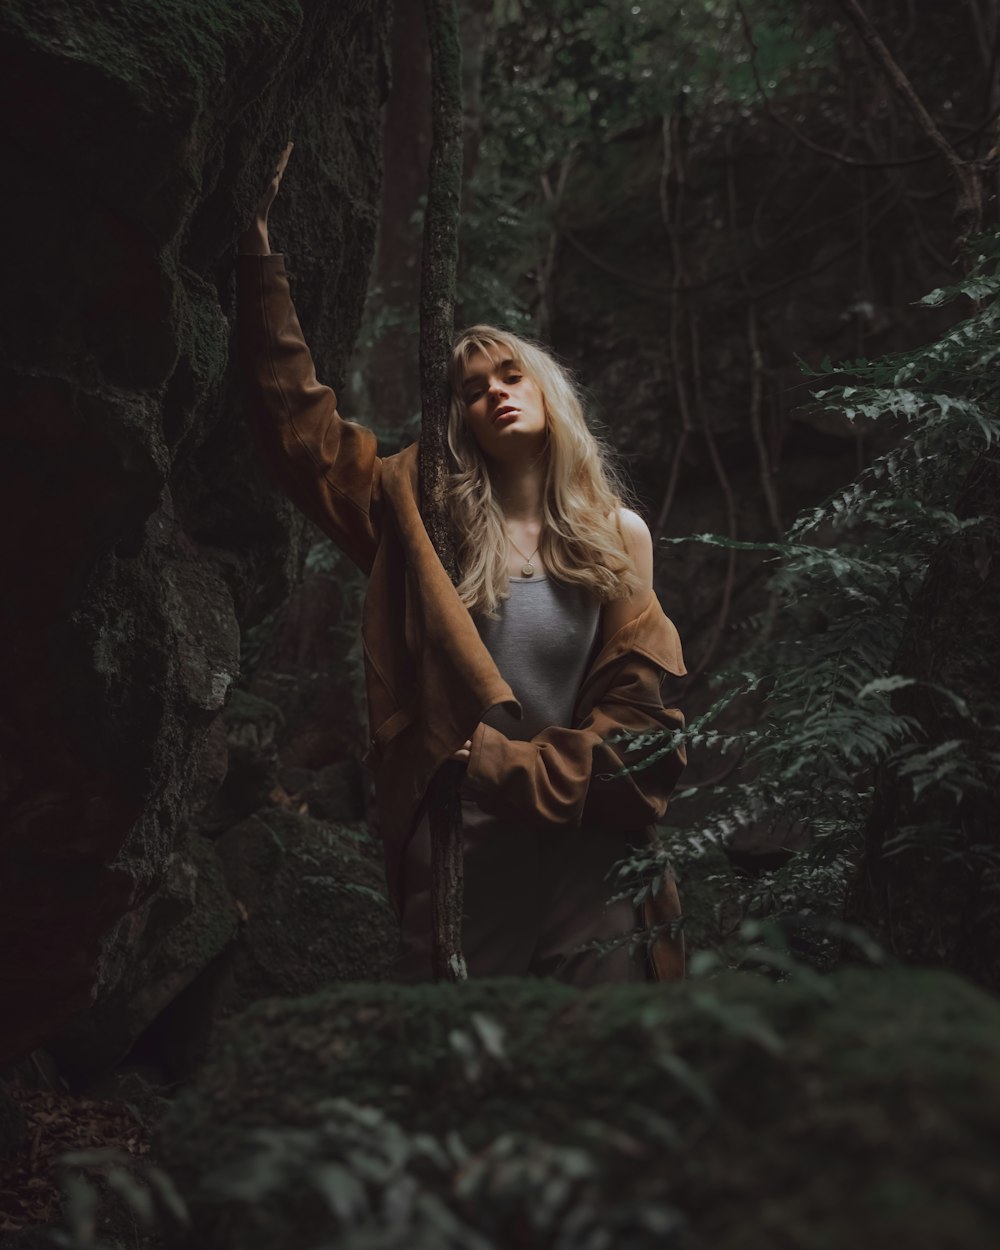 검은 가죽 재킷을 입은 여자가 숲 한가운데에 서 있다